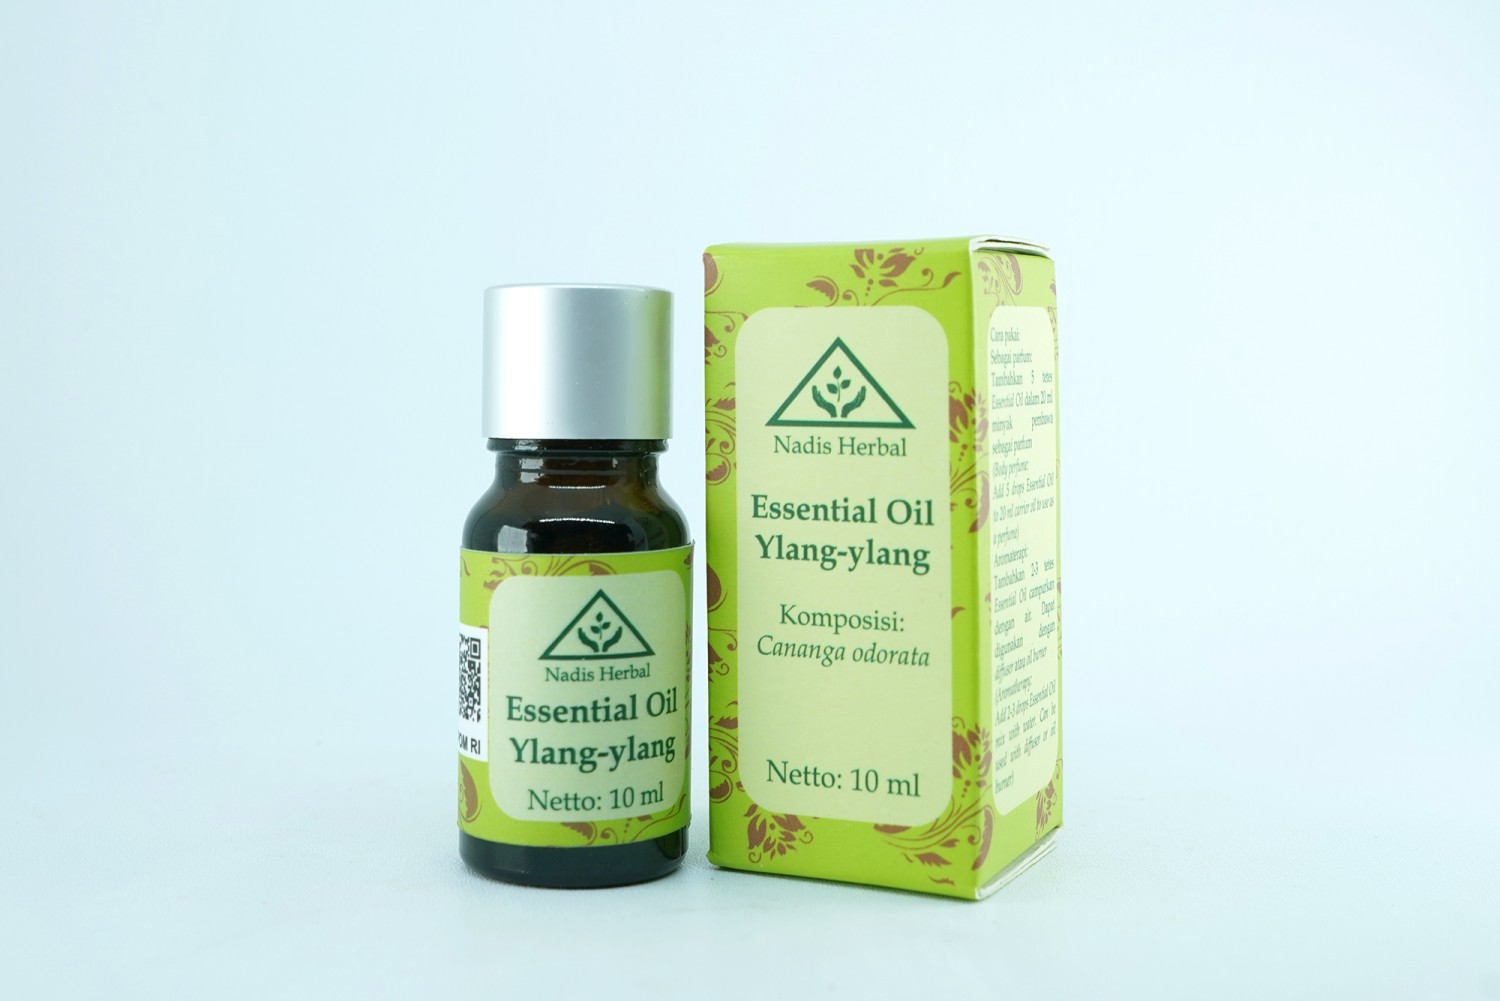 Essential Oil Ylang-ylang